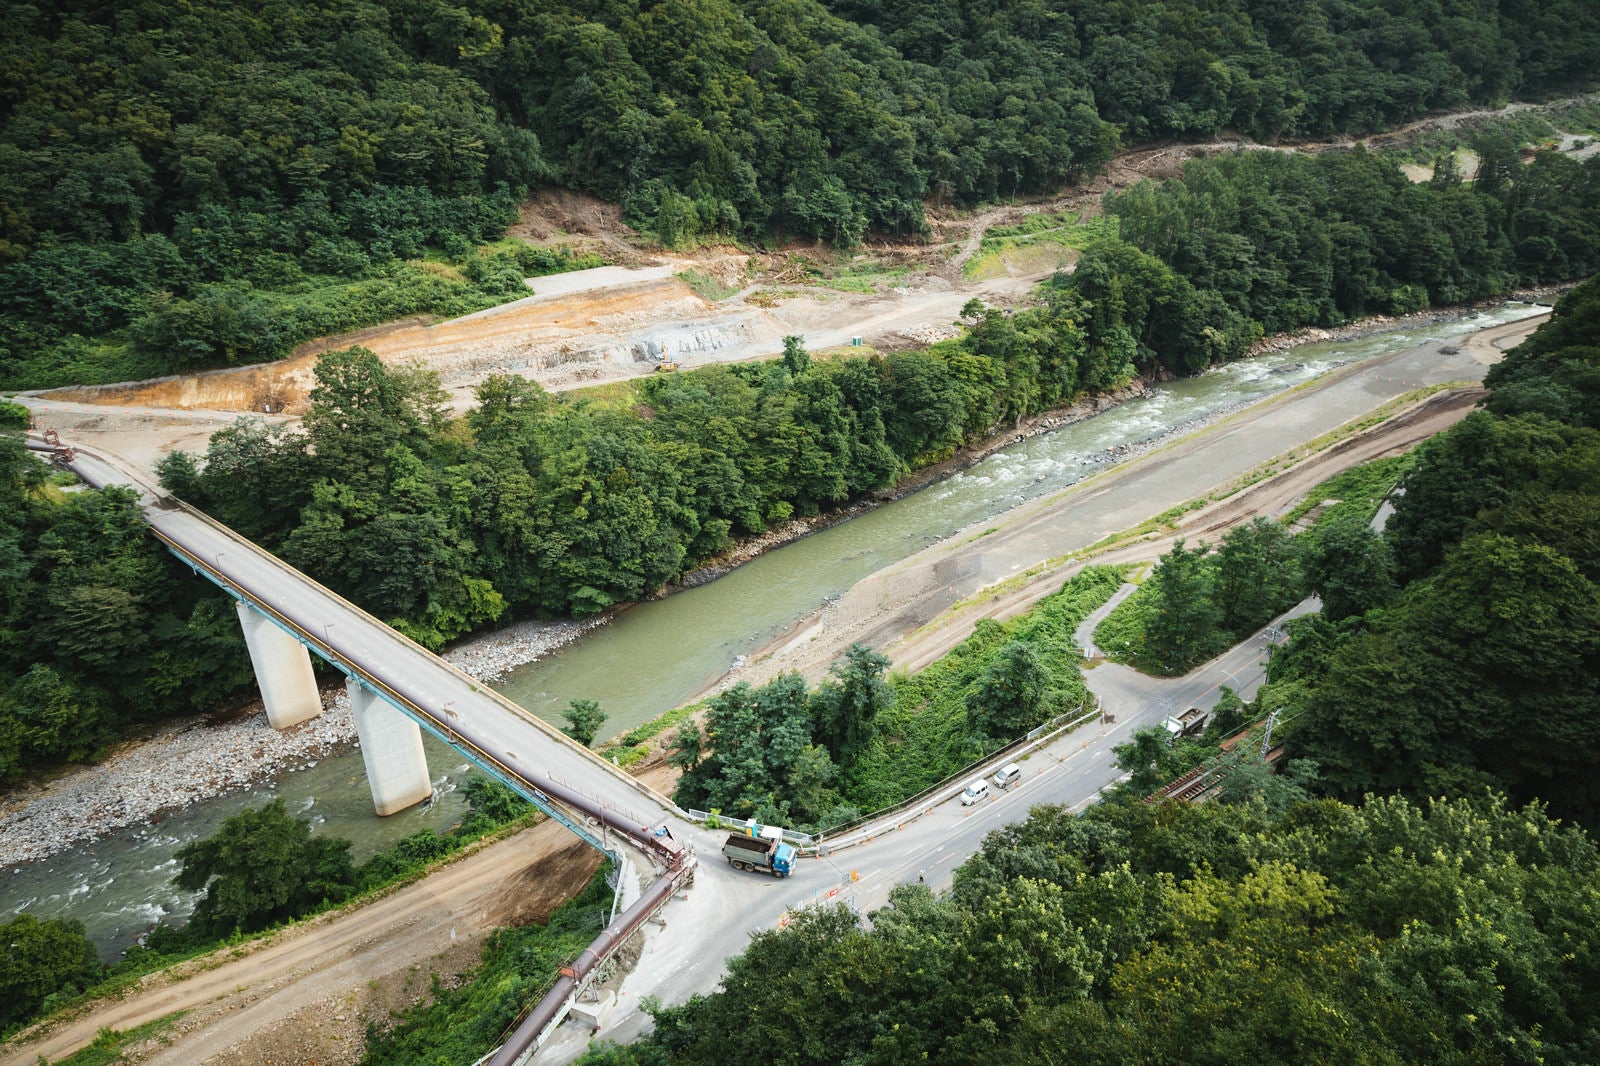 「工事が着々とすすむ八ッ場ダムの様子」の写真